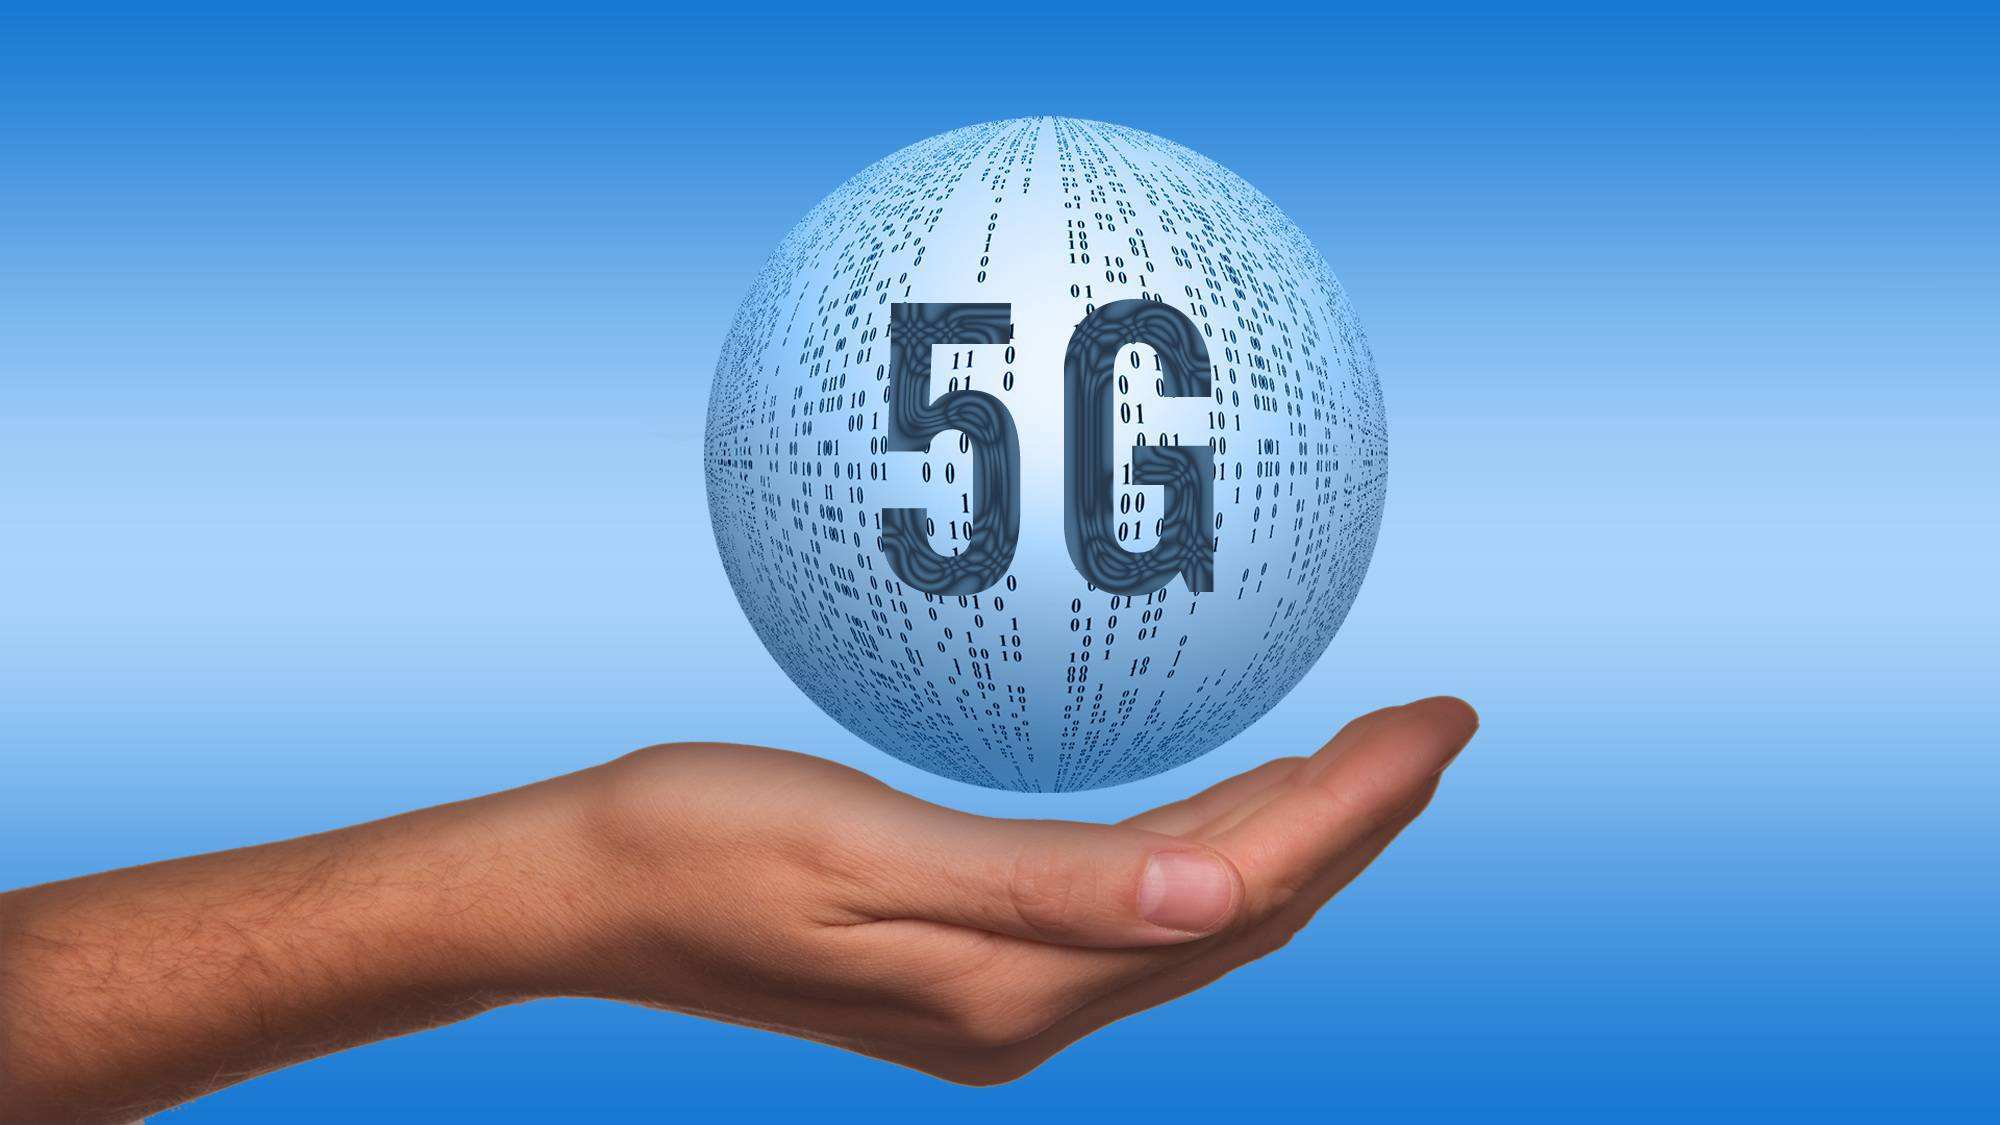 武安市5G网络的快速普及带来的生活巨变和科技进步  第8张